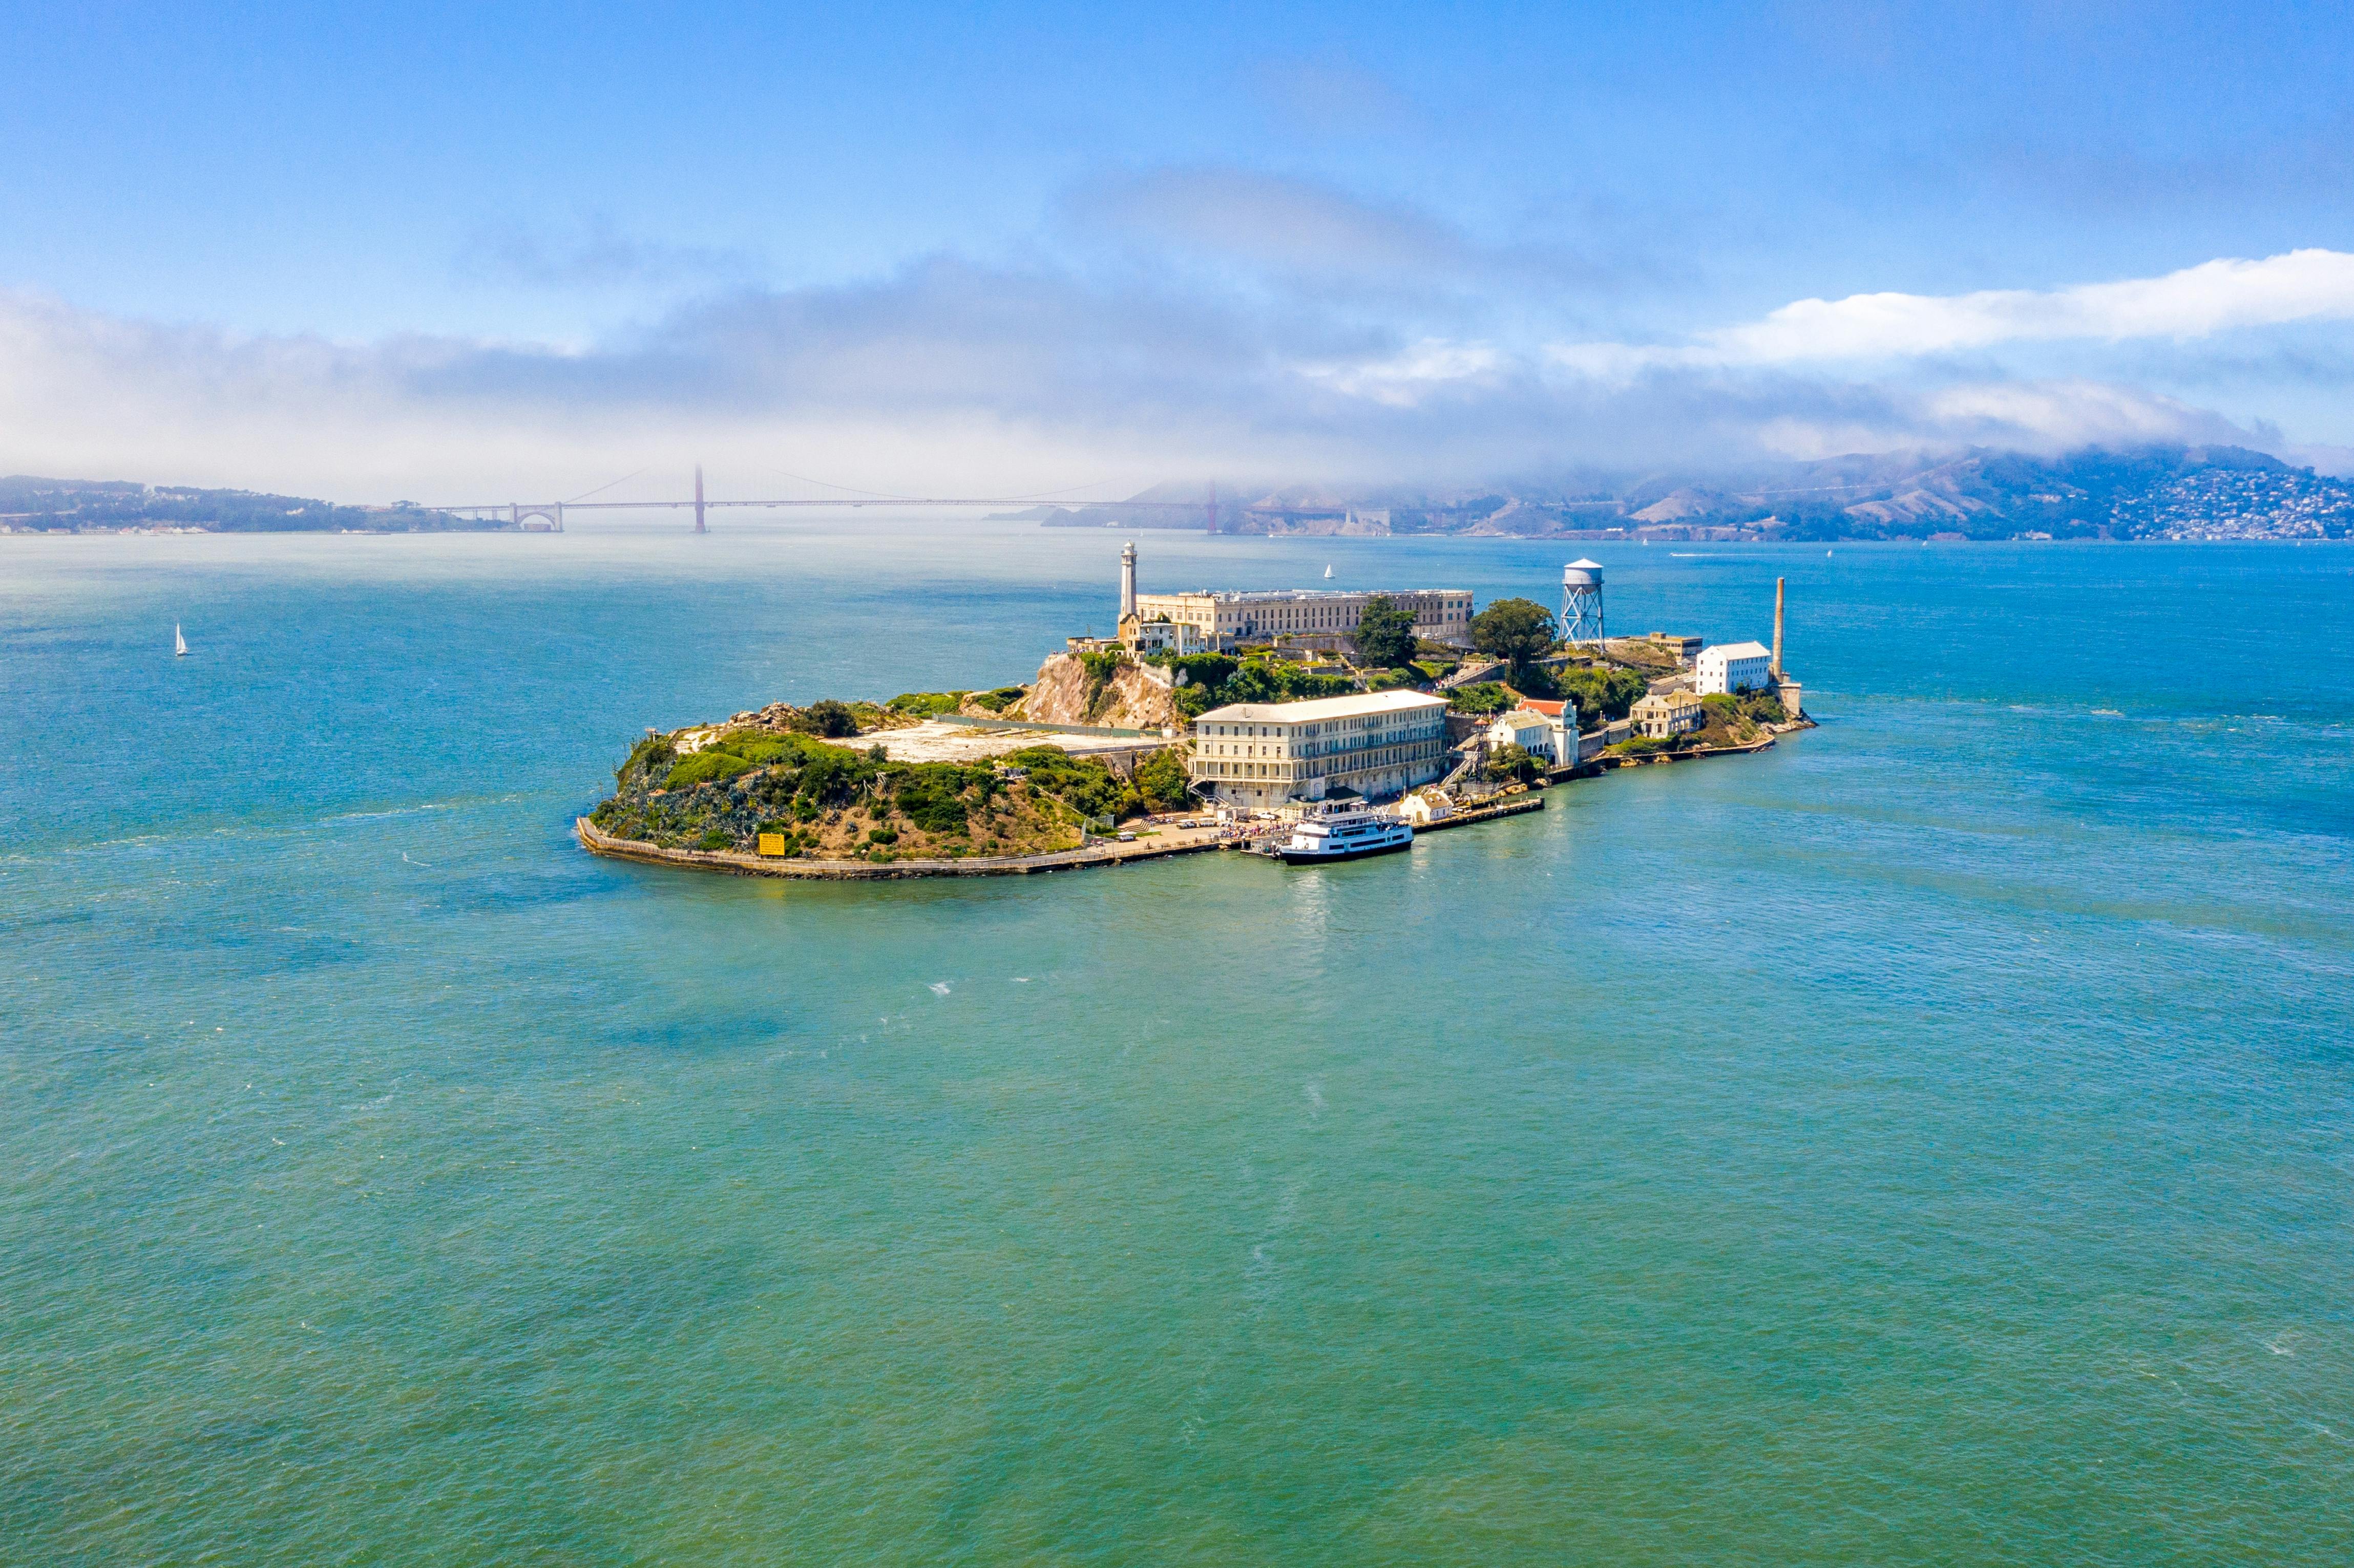 Excursión a Alcatraz que incluye ferry y crédito para almuerzo en Wharf